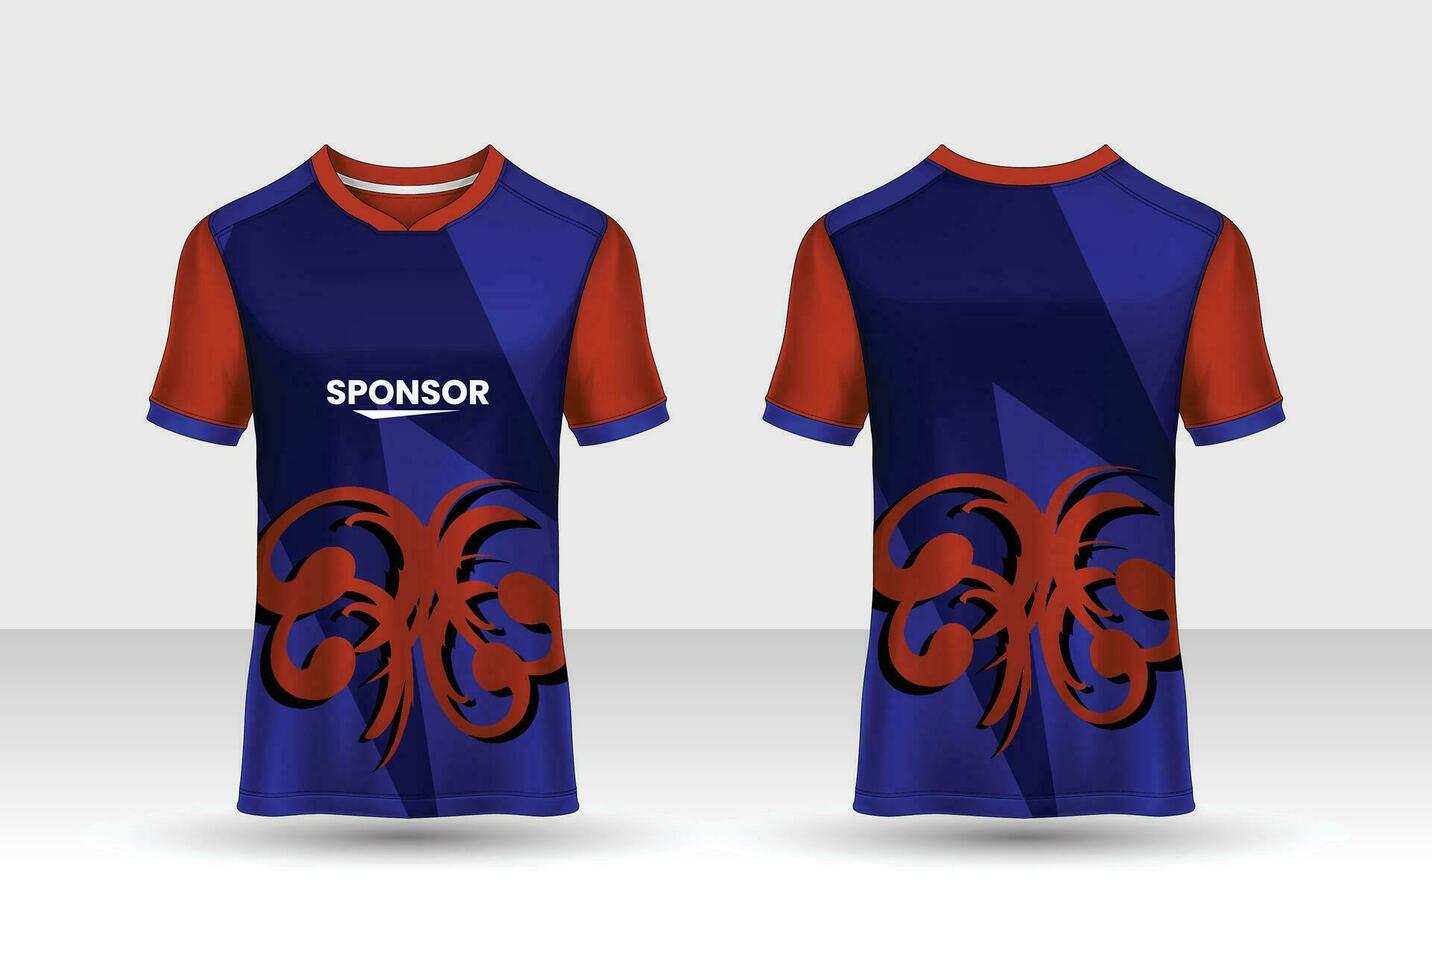 camiseta deportiva y plantilla de camiseta maqueta de vector de diseño de camiseta deportiva. diseño deportivo para fútbol, carreras, camisetas de juego. vector.